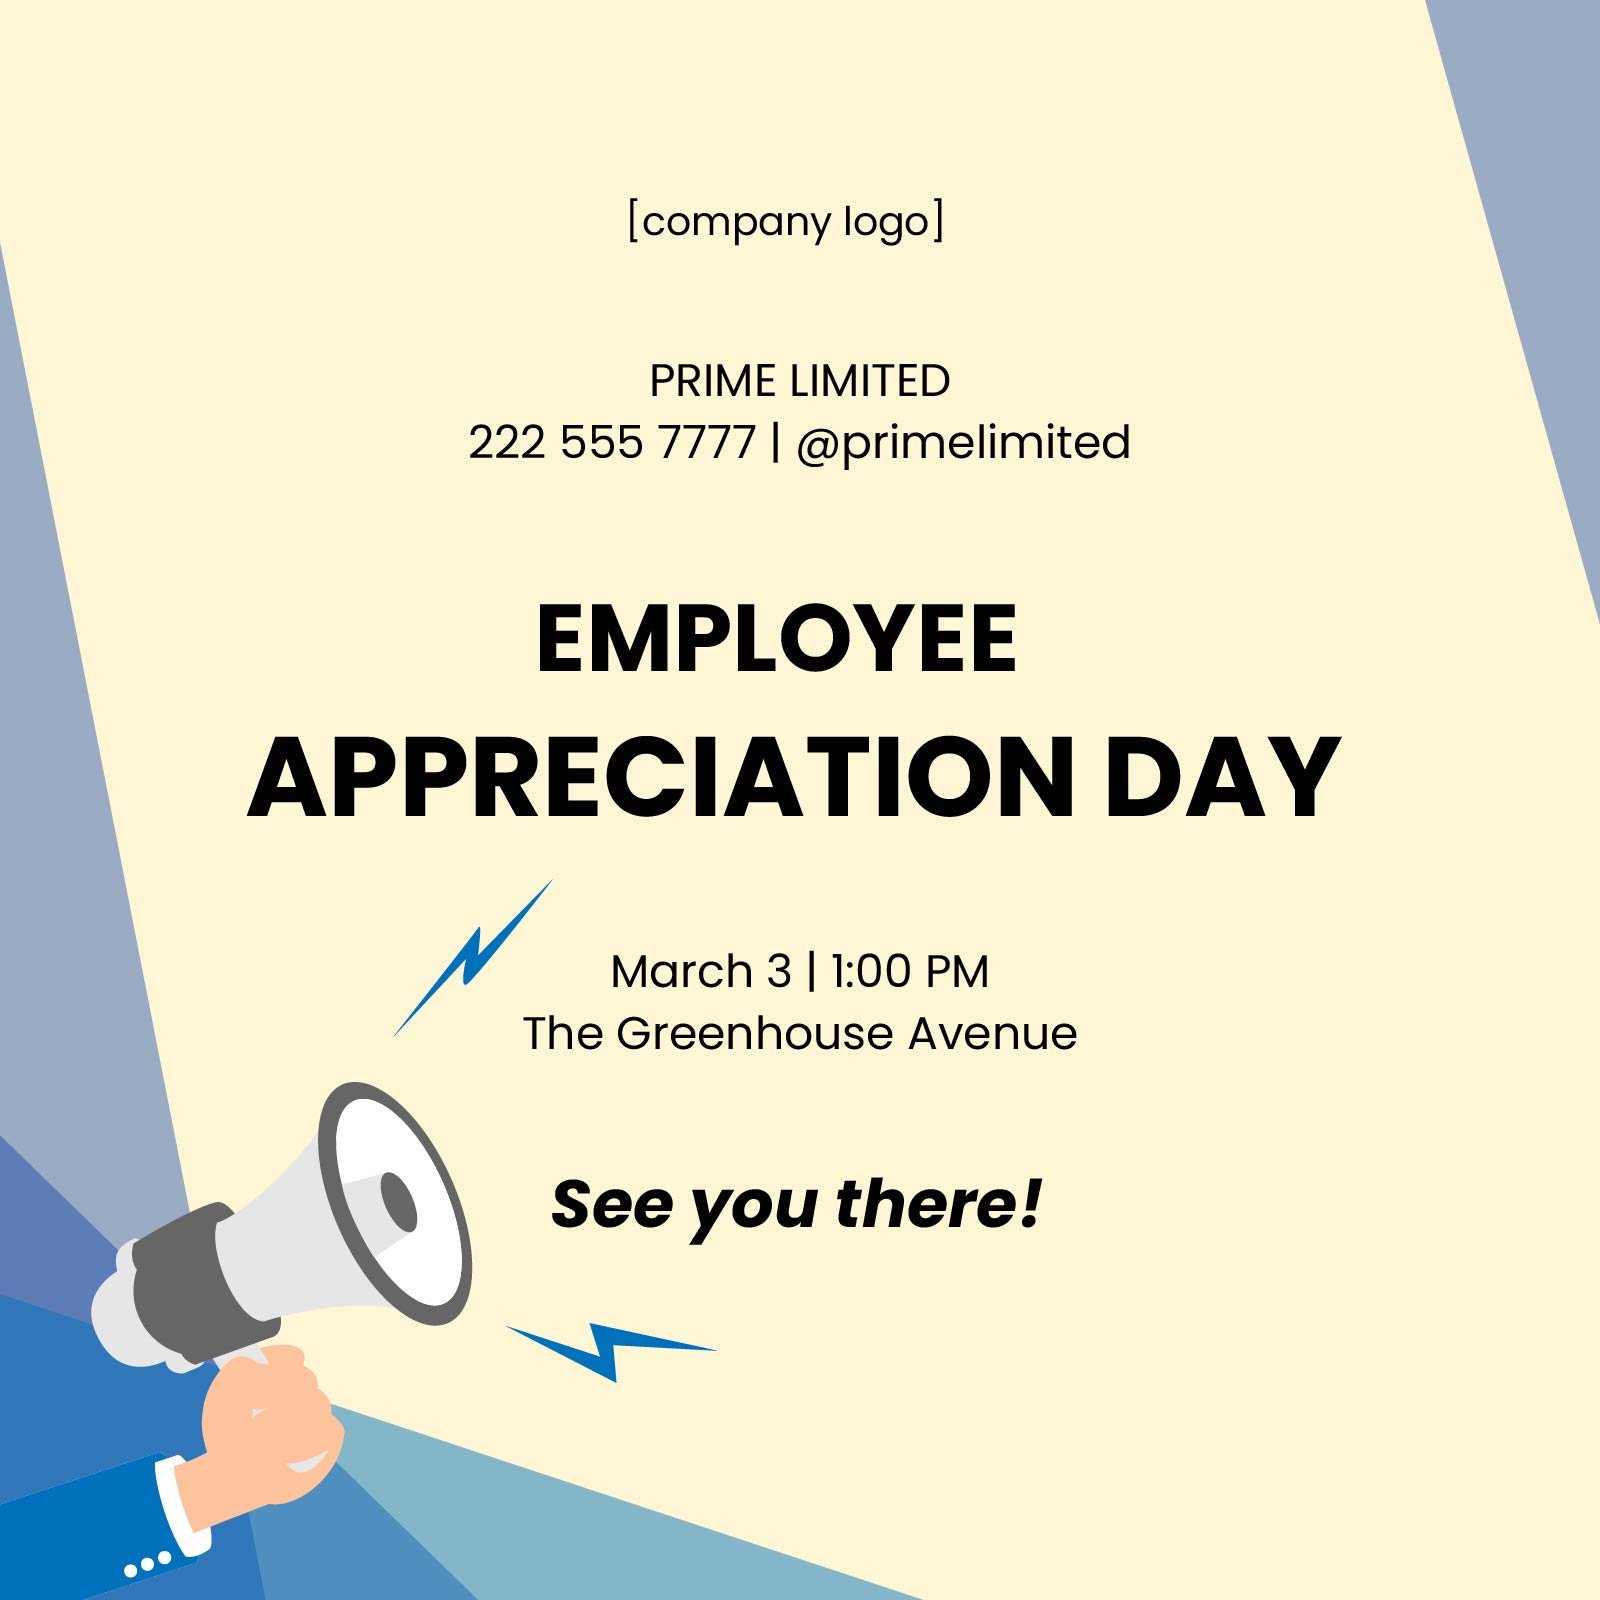 Employee Appreciation Day Flyer Vector EPS, Illustrator, JPG, PSD